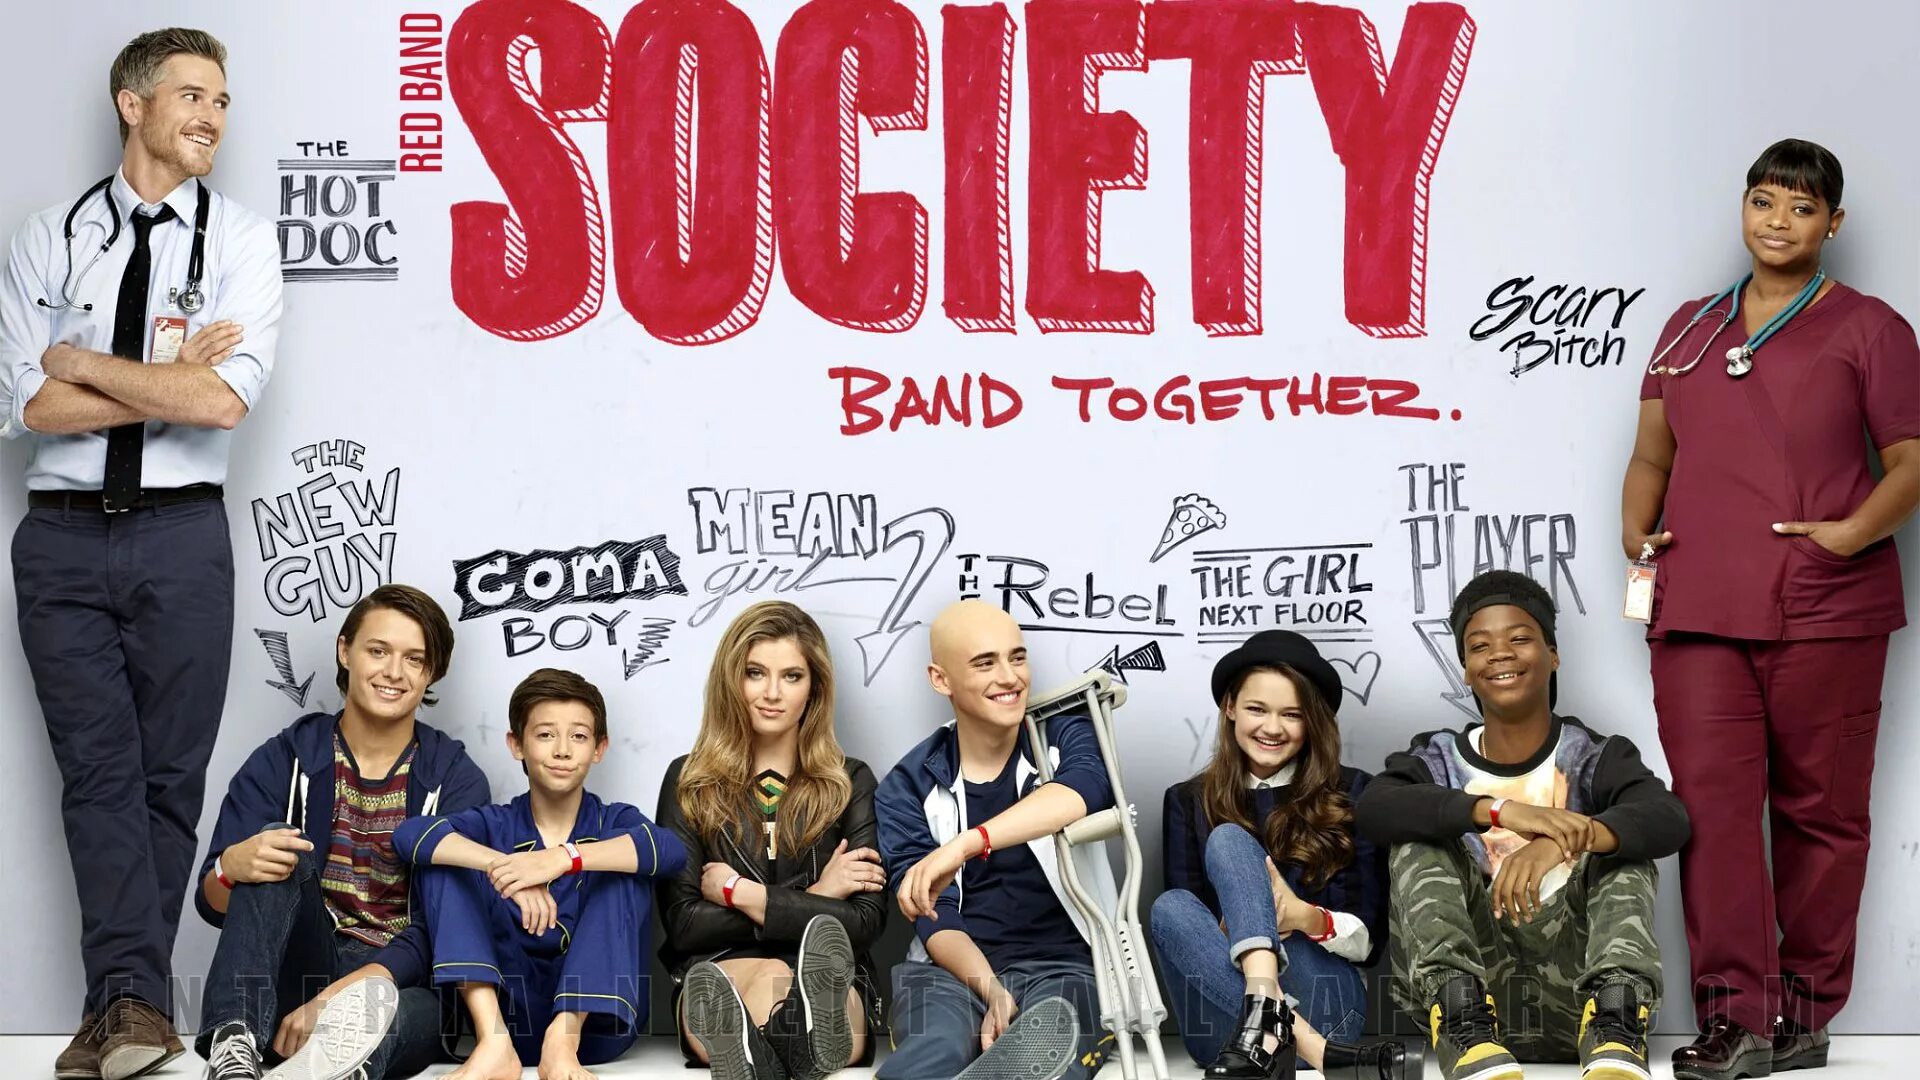 Society band